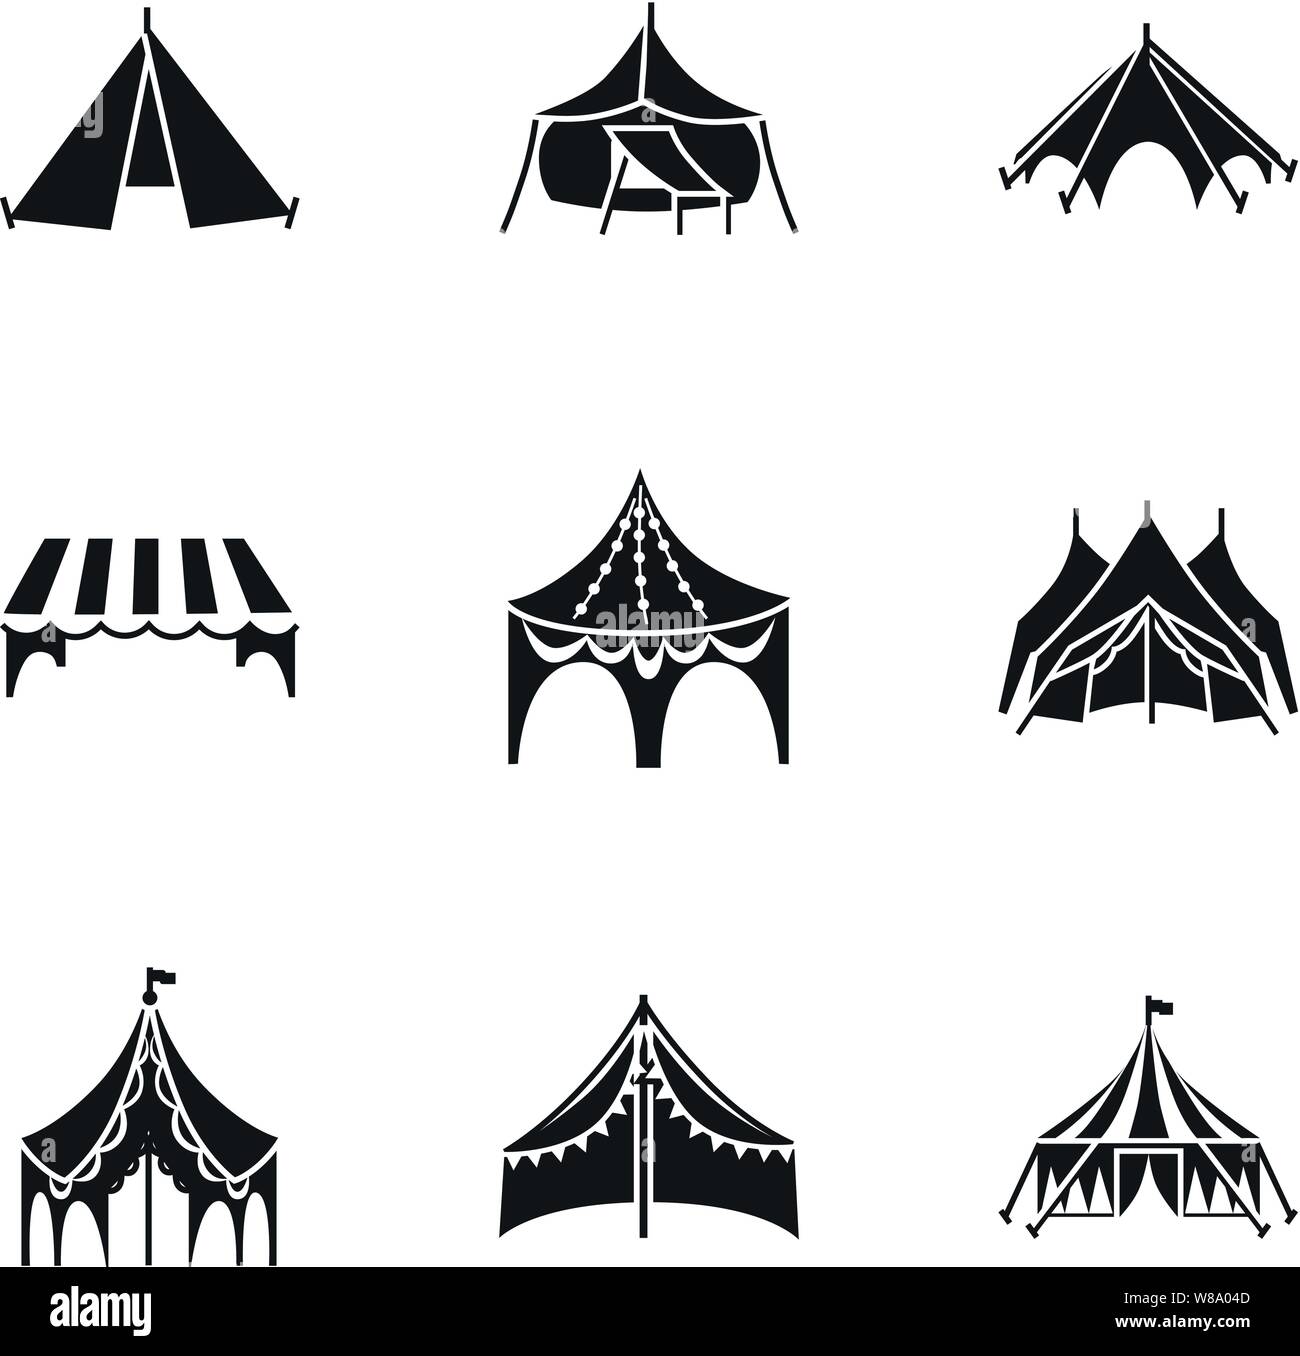 Outdoor Zelt Icon Set. Einfacher Satz von 9 Outdoor Zelt Vector Icons für  Web Design auf weißem Hintergrund Stock-Vektorgrafik - Alamy